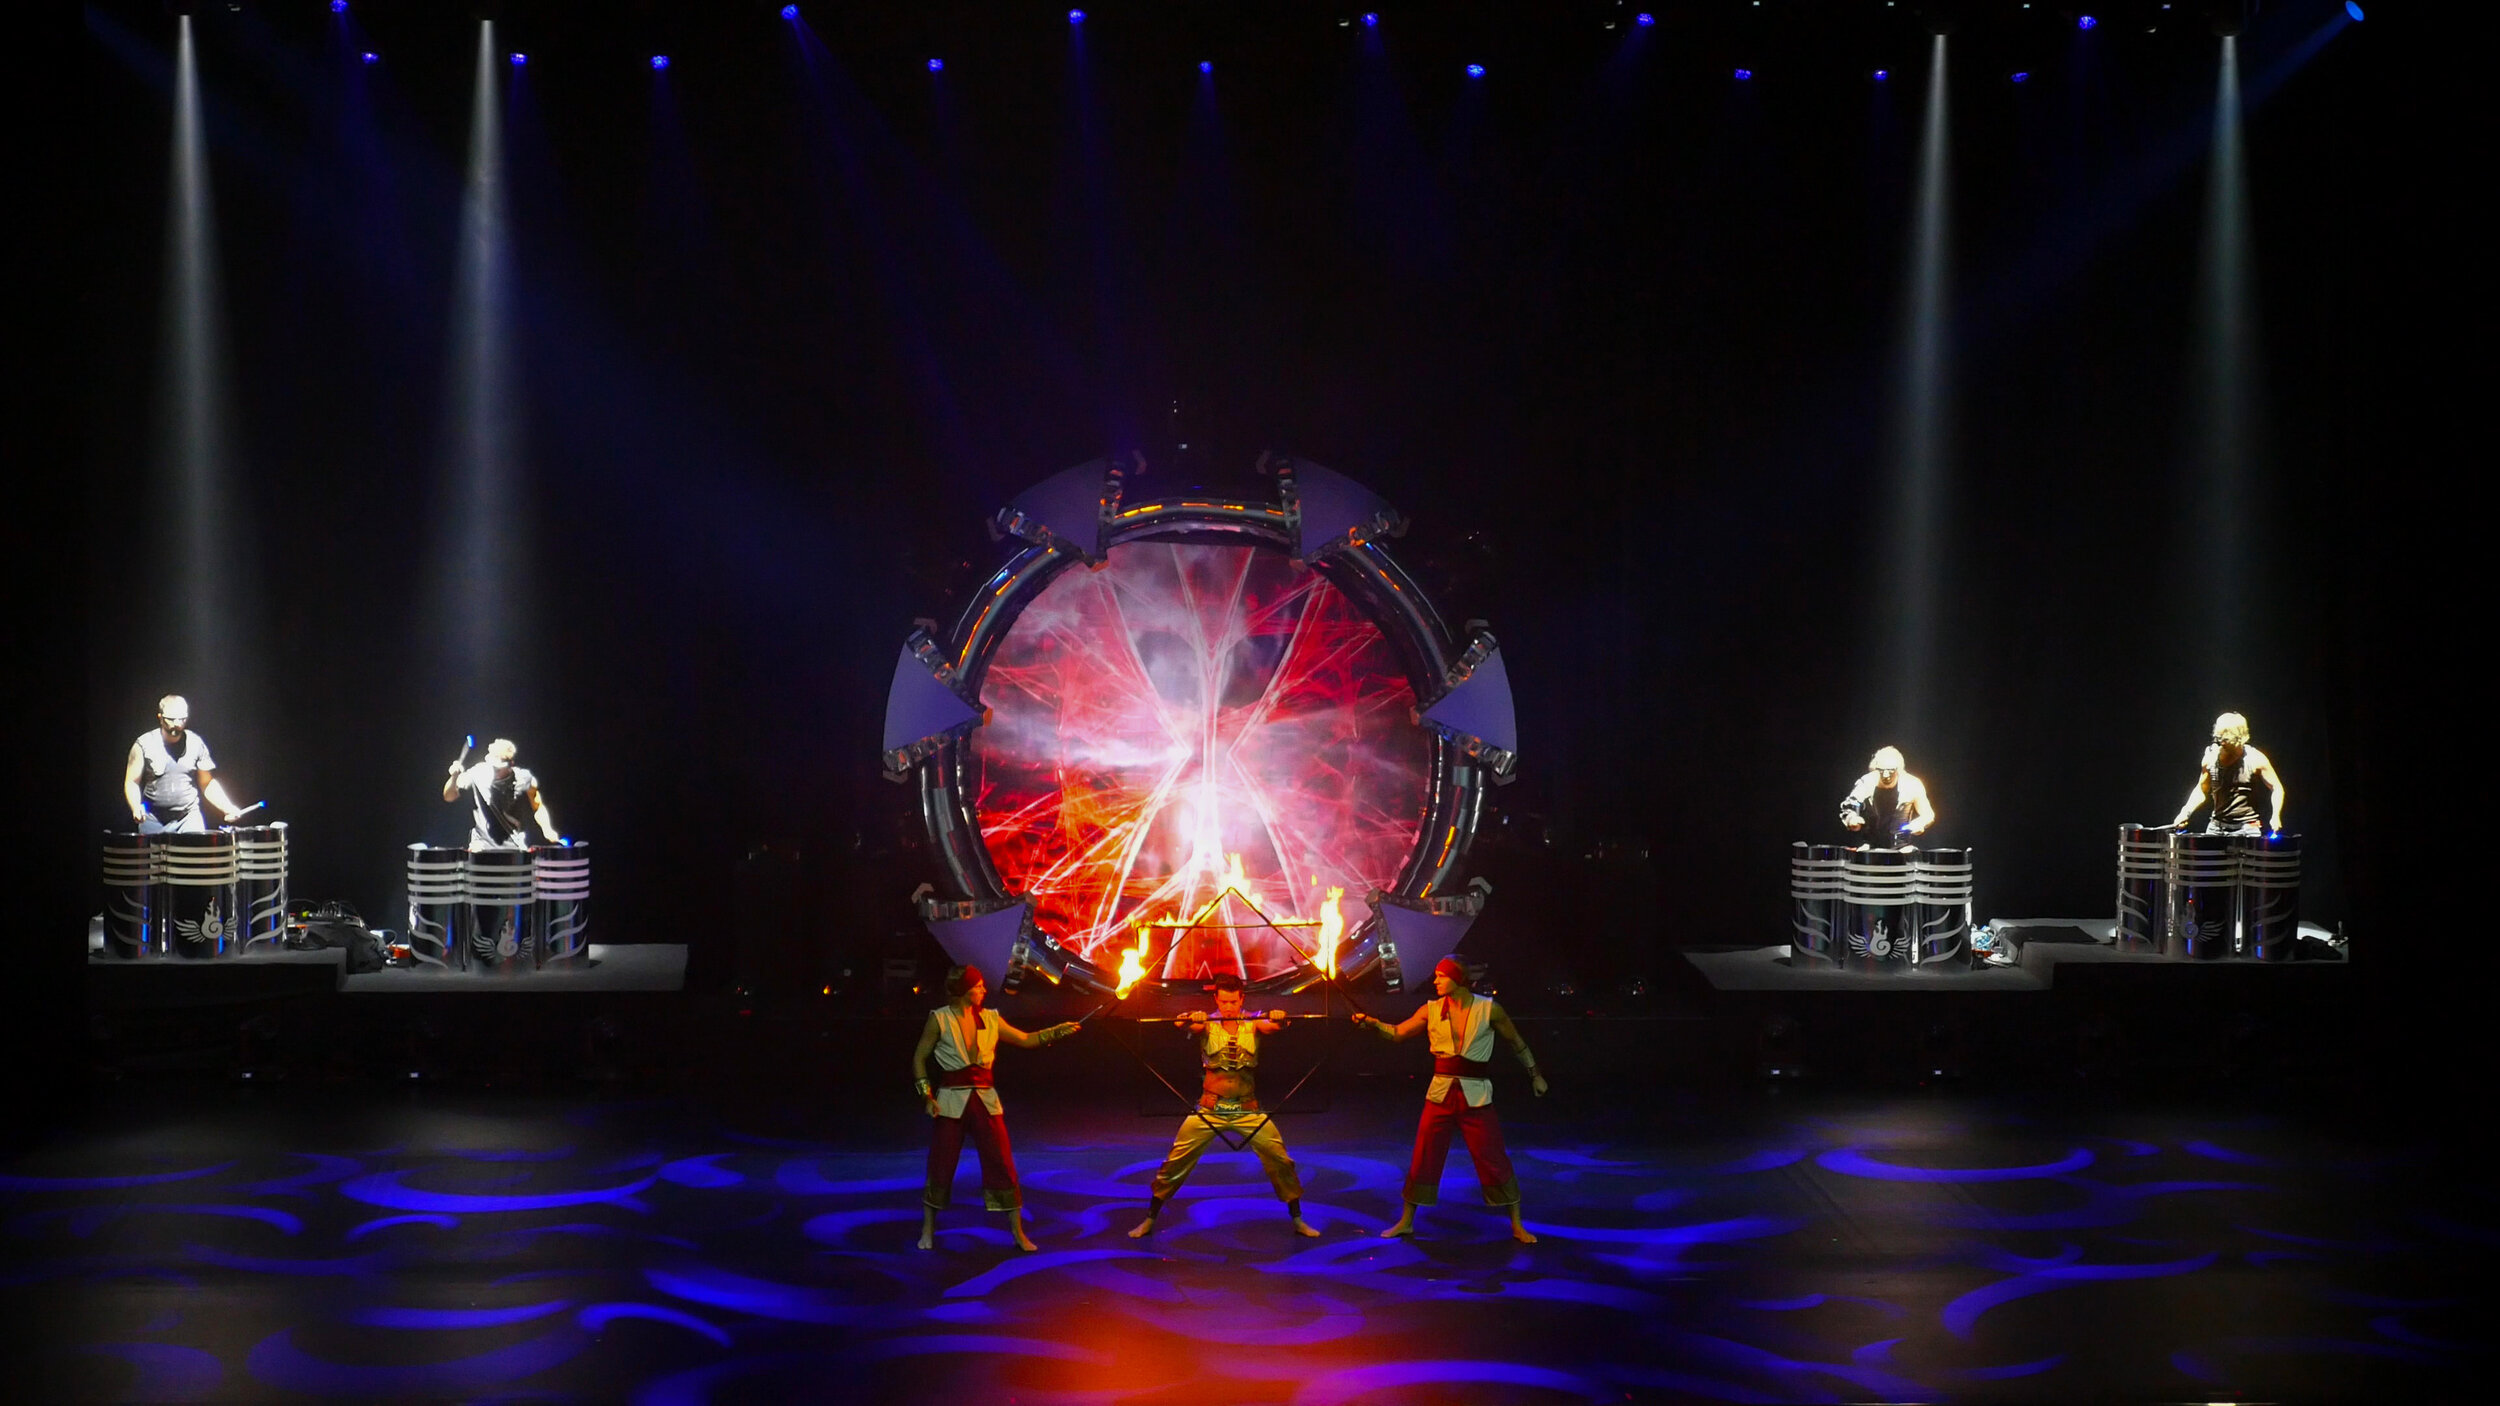 PHOENIX Powerful LED Drums, Ignition of Fire Star, Illuminaire Show, Abu Dhabi, United Arab Emirates